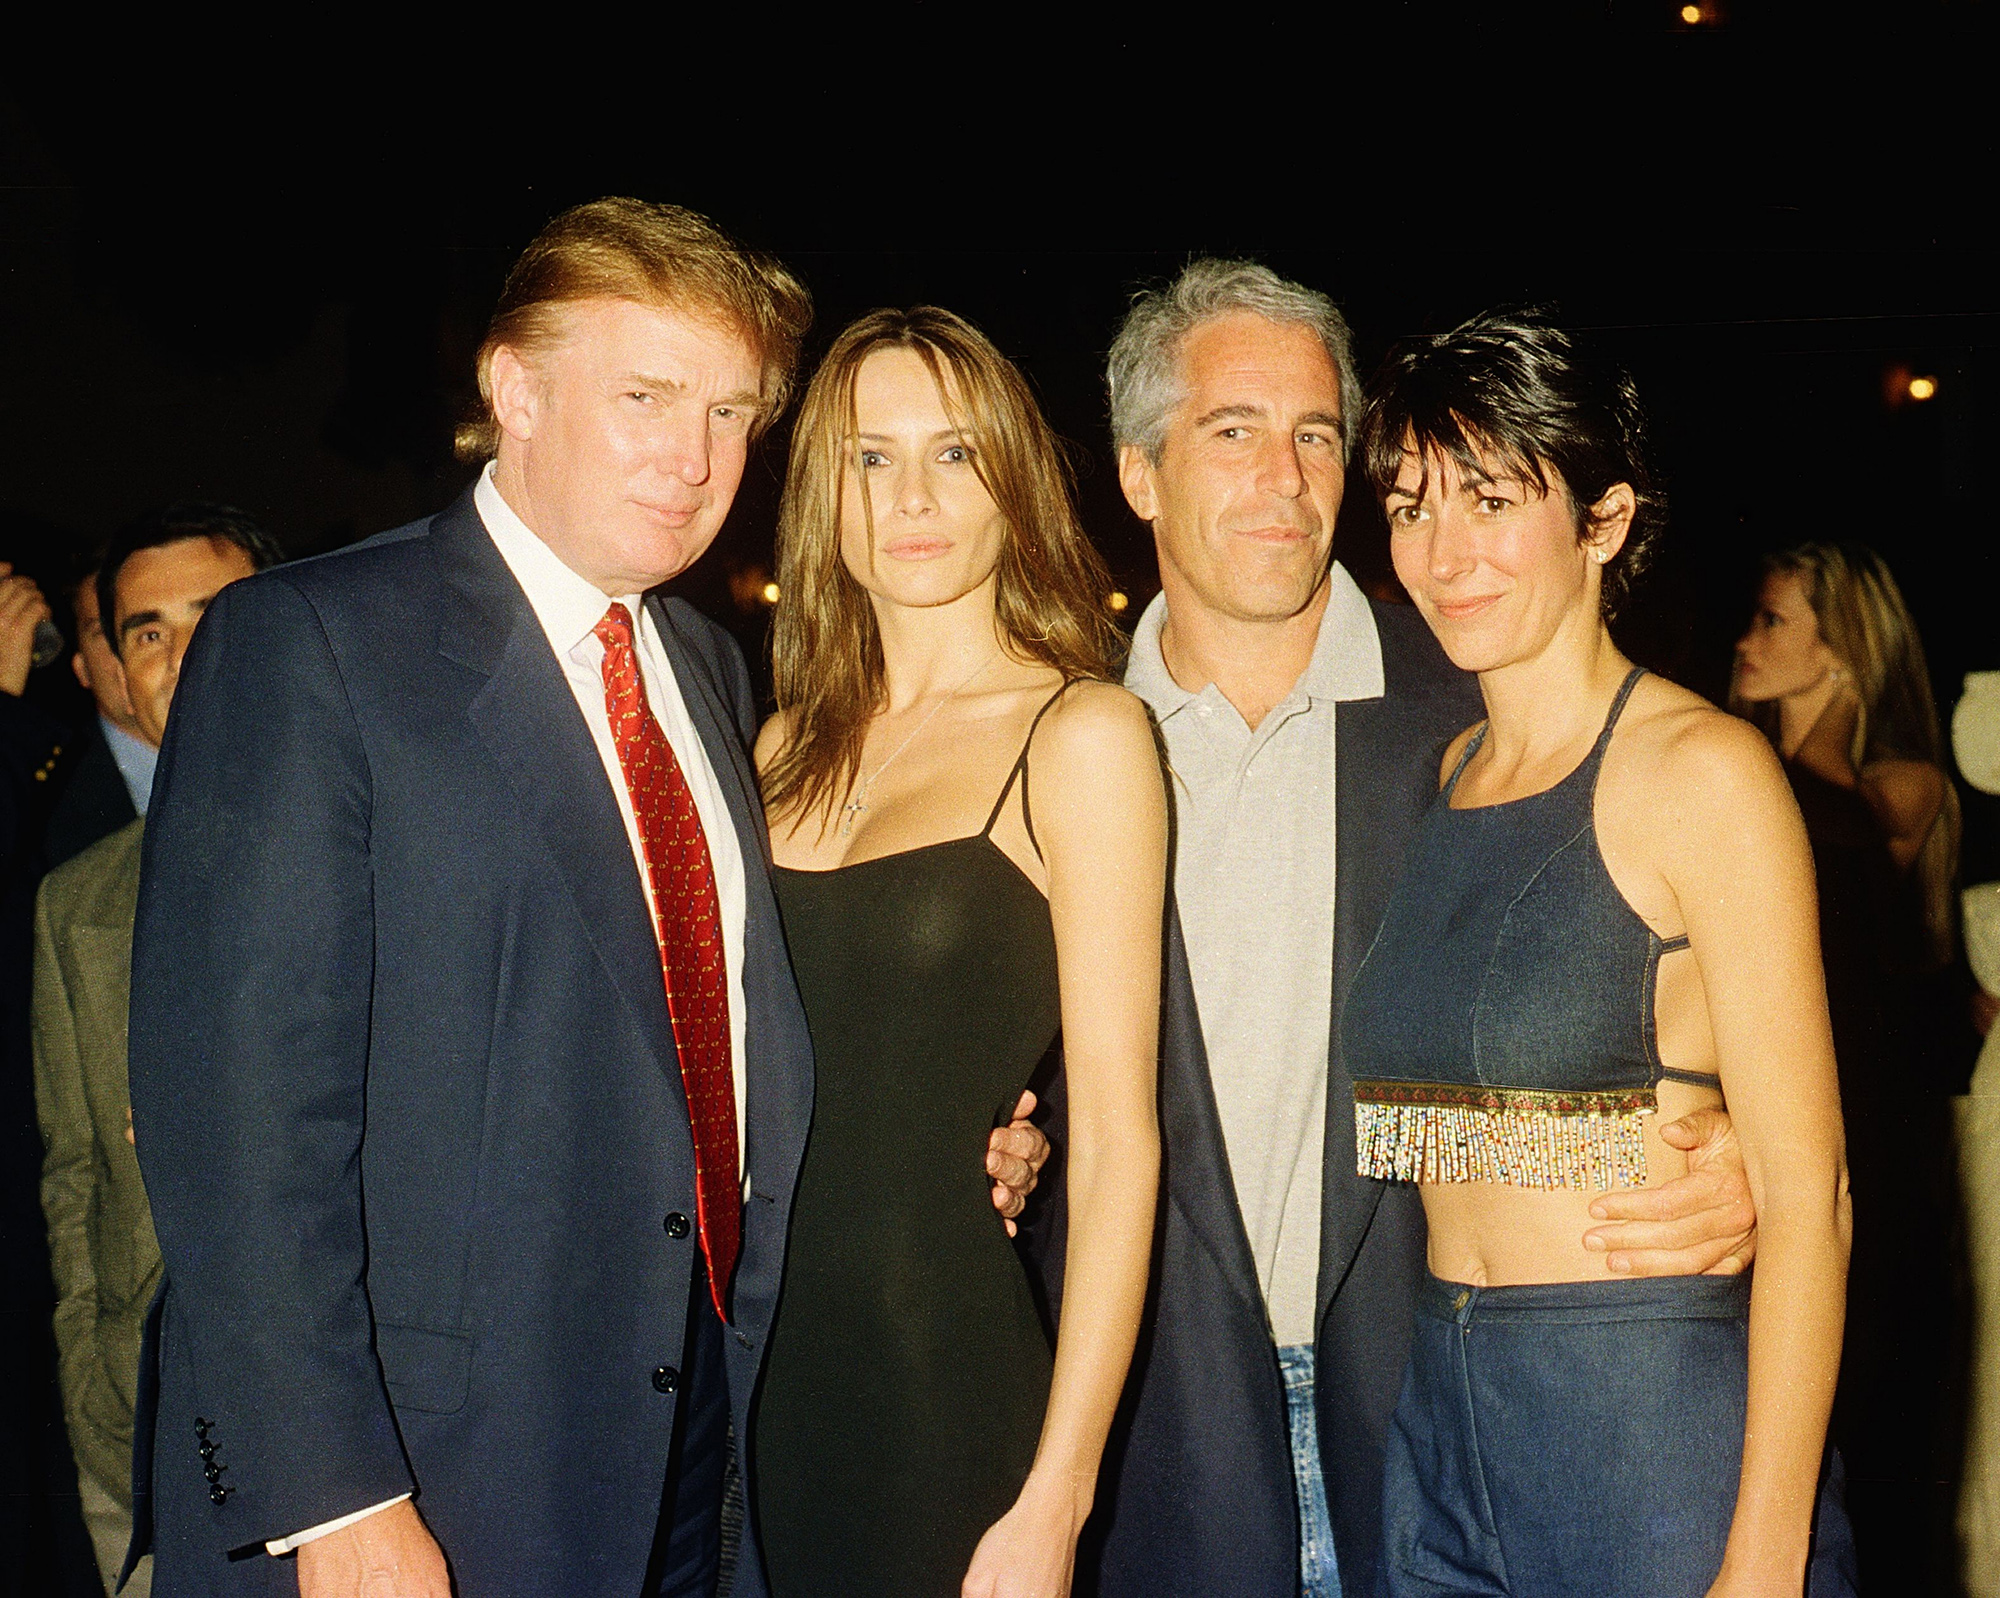 Donald és Melania Trump (akkor még Melania Knauss), Epstein és Ghislaine Maxwell a floridai Mar-a-Lagóban 2000-ben (Fotó: Davidoff Studios/Getty Images)